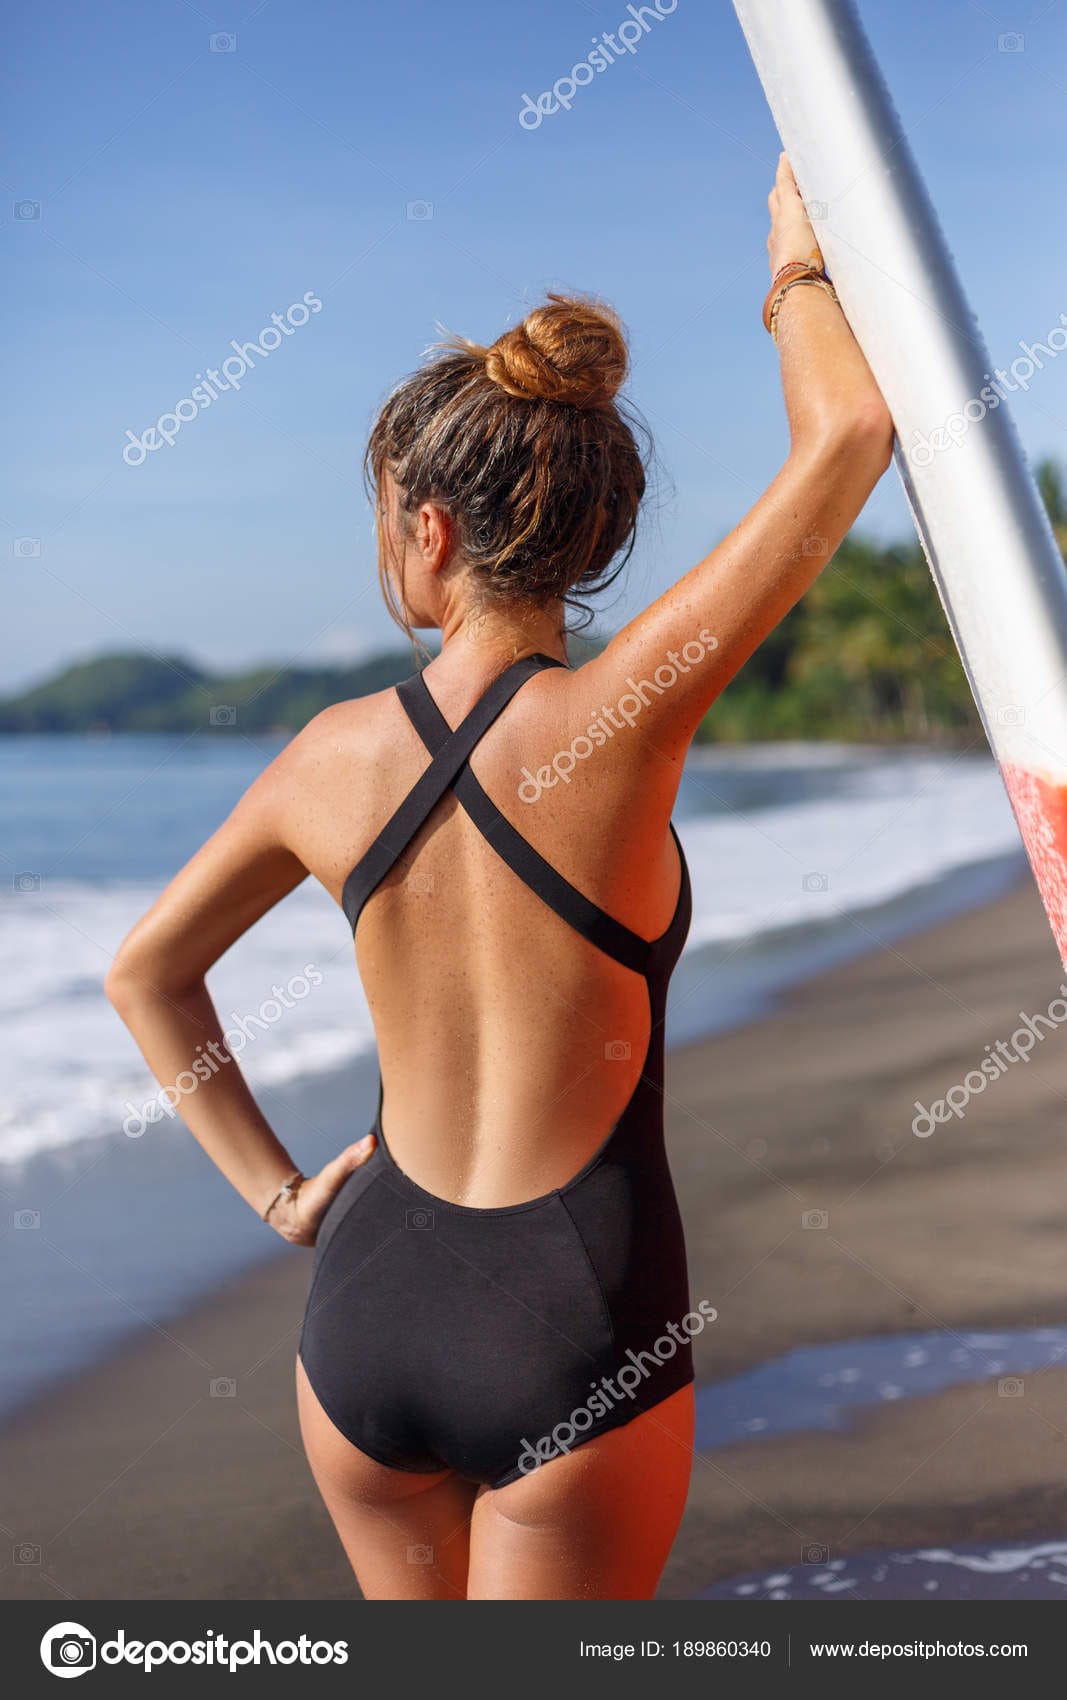 surf suit women